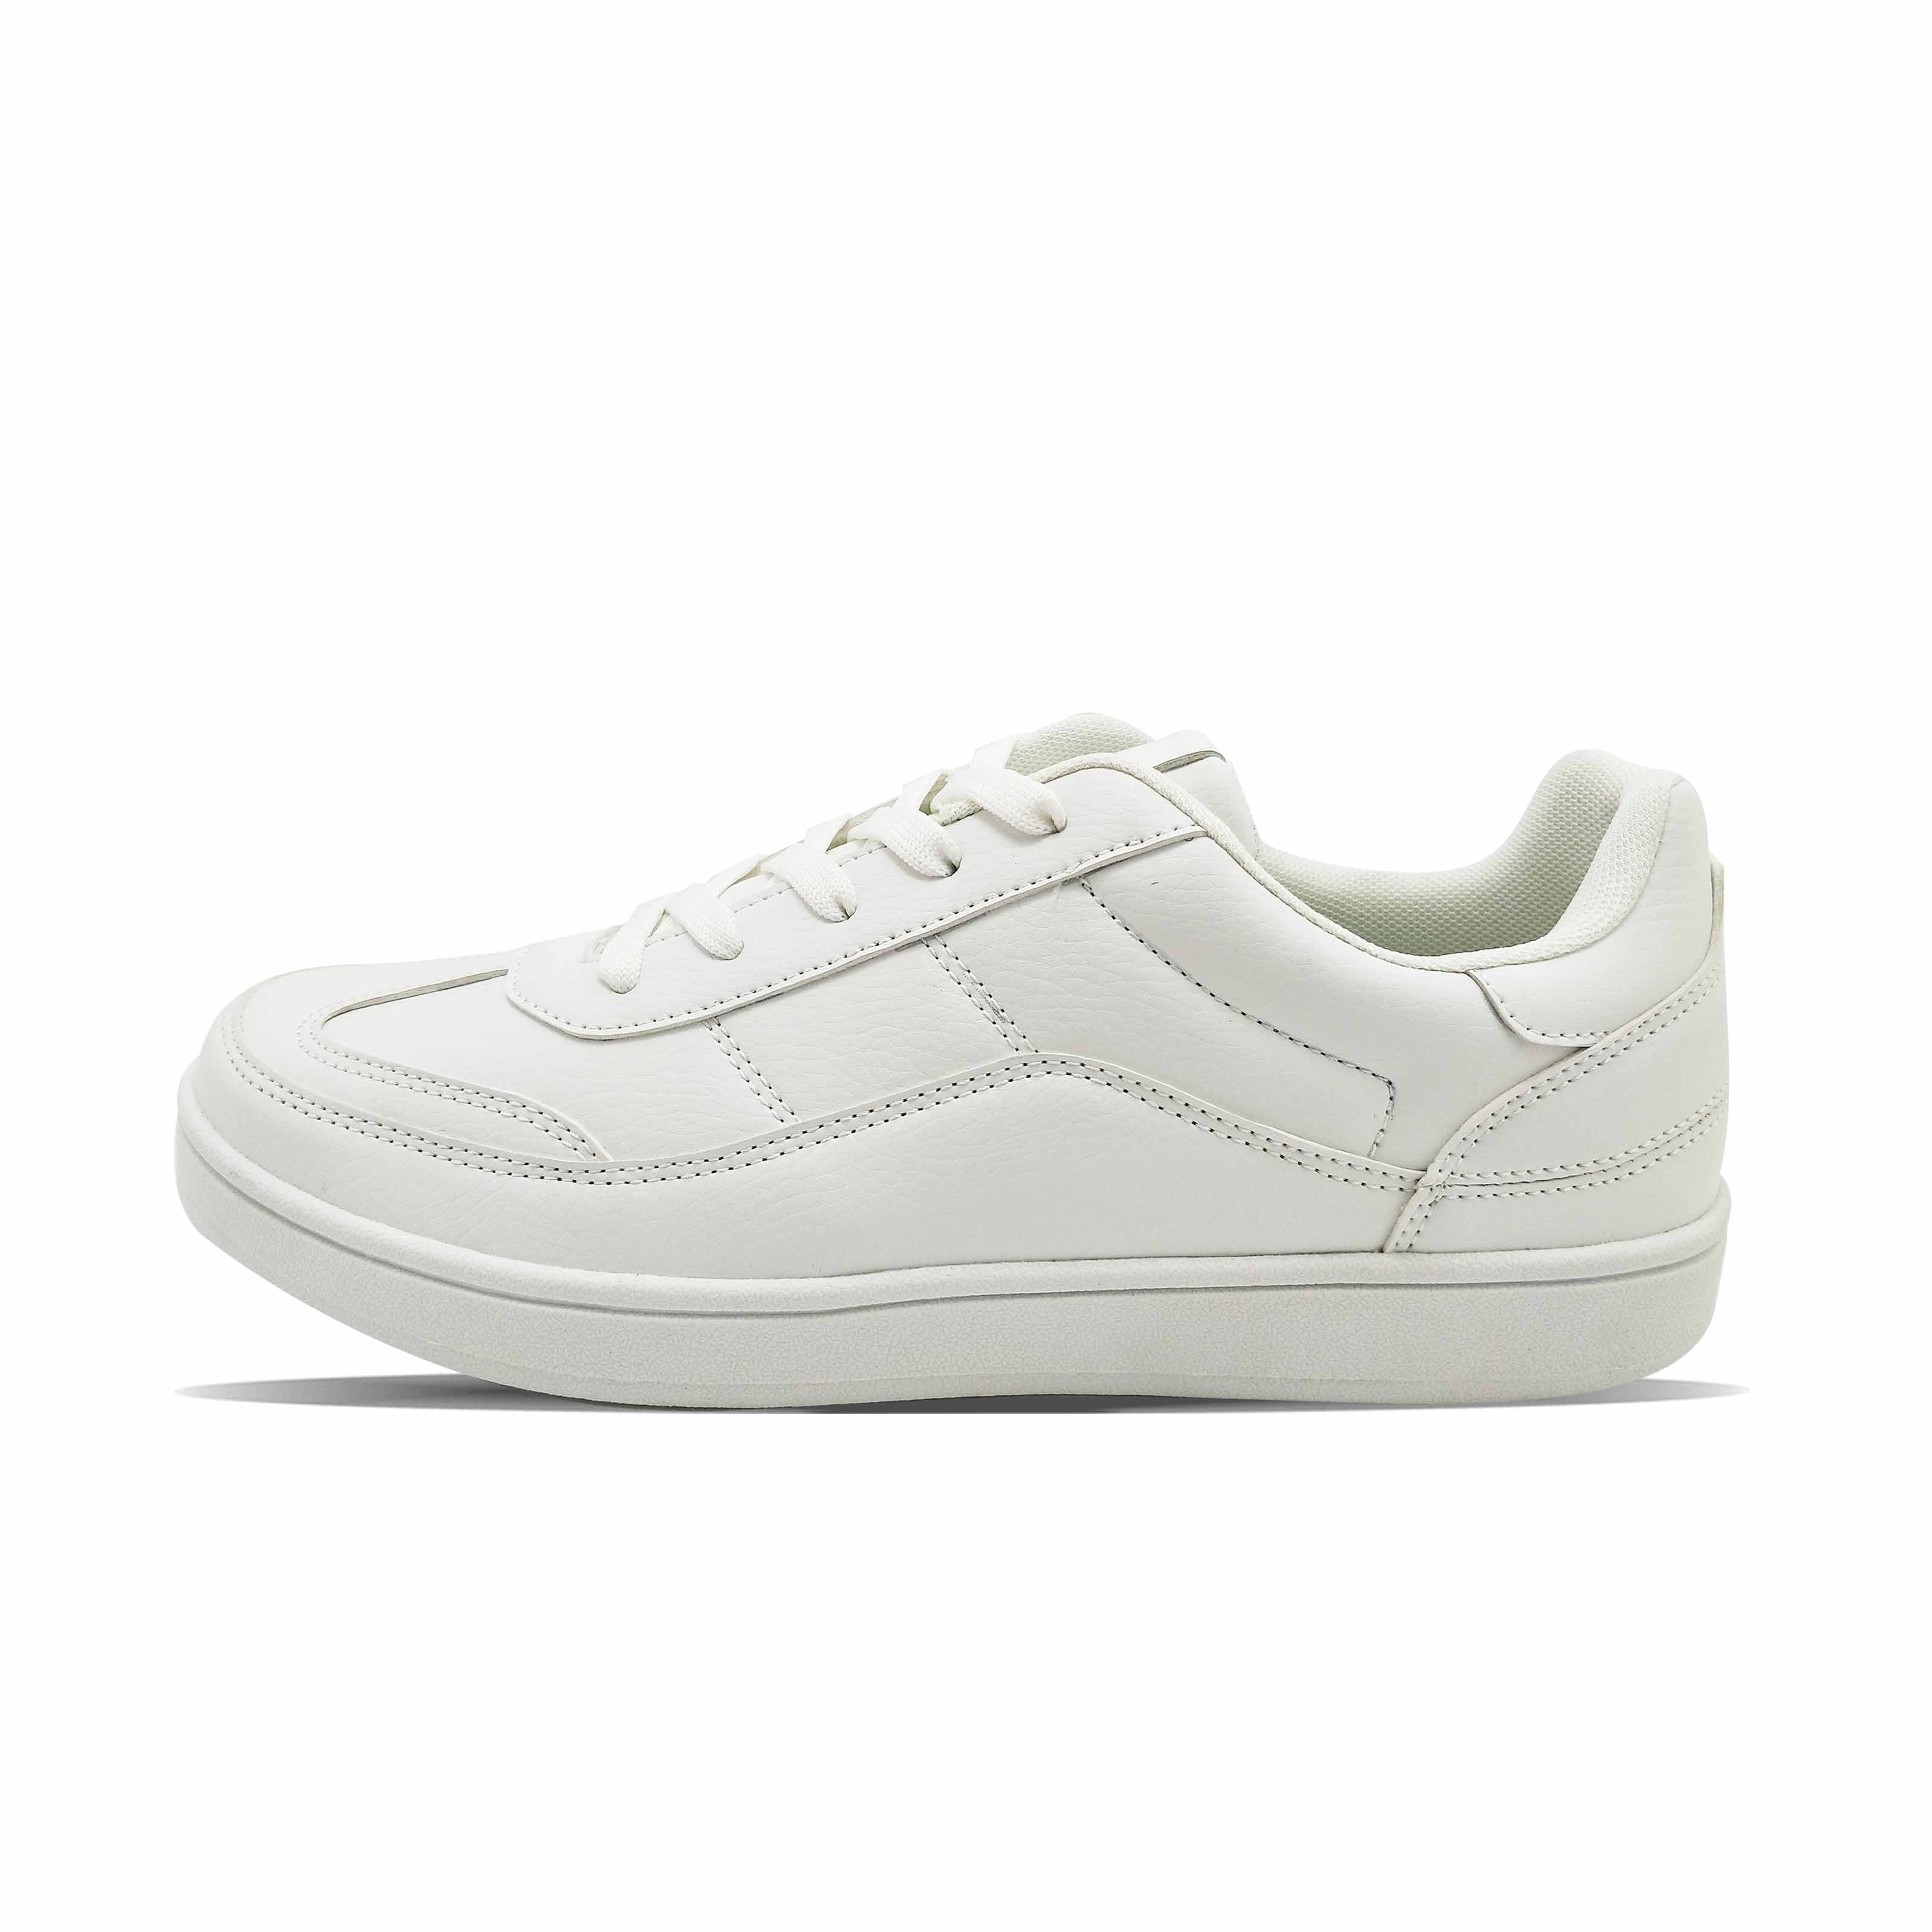 Feine Nähte Komfortables Falten leicht reine weiße weiße lässige Männer vielseitige Schuhe